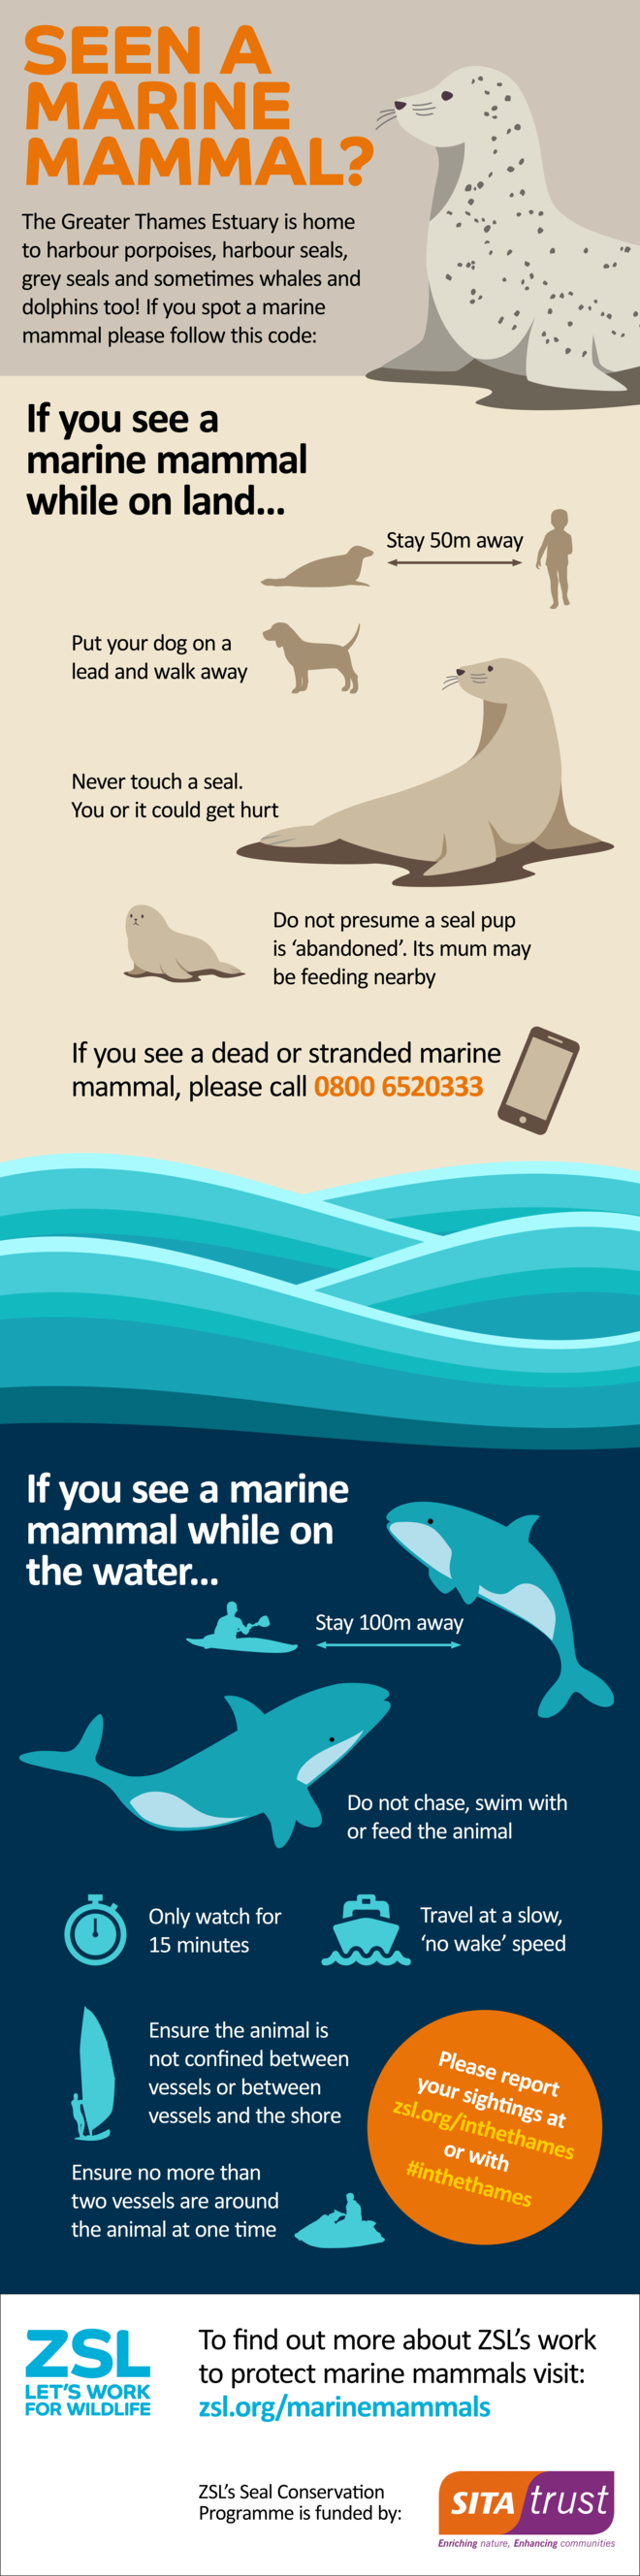 Marine Mammal Code of Conduct